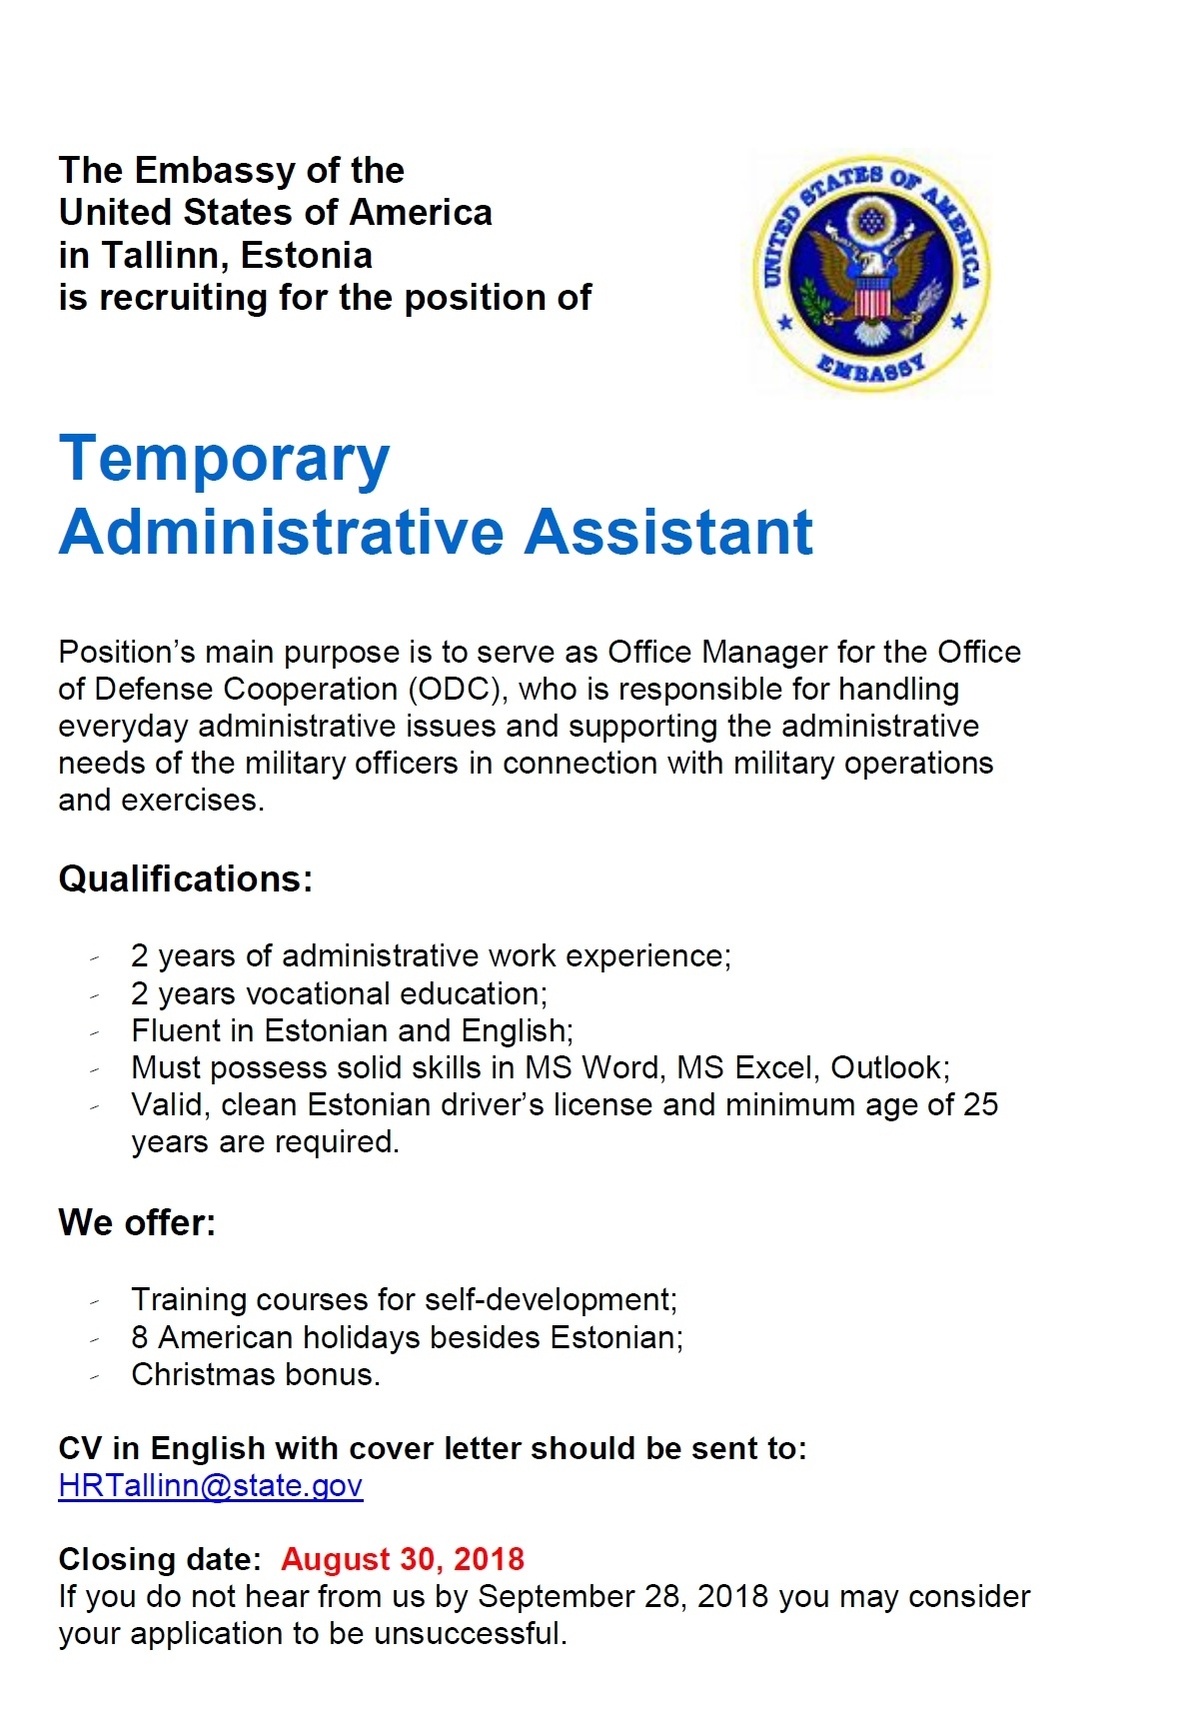 Ameerika Ühendriikide Suursaatkond Eestis Temporary Administrative Assistant